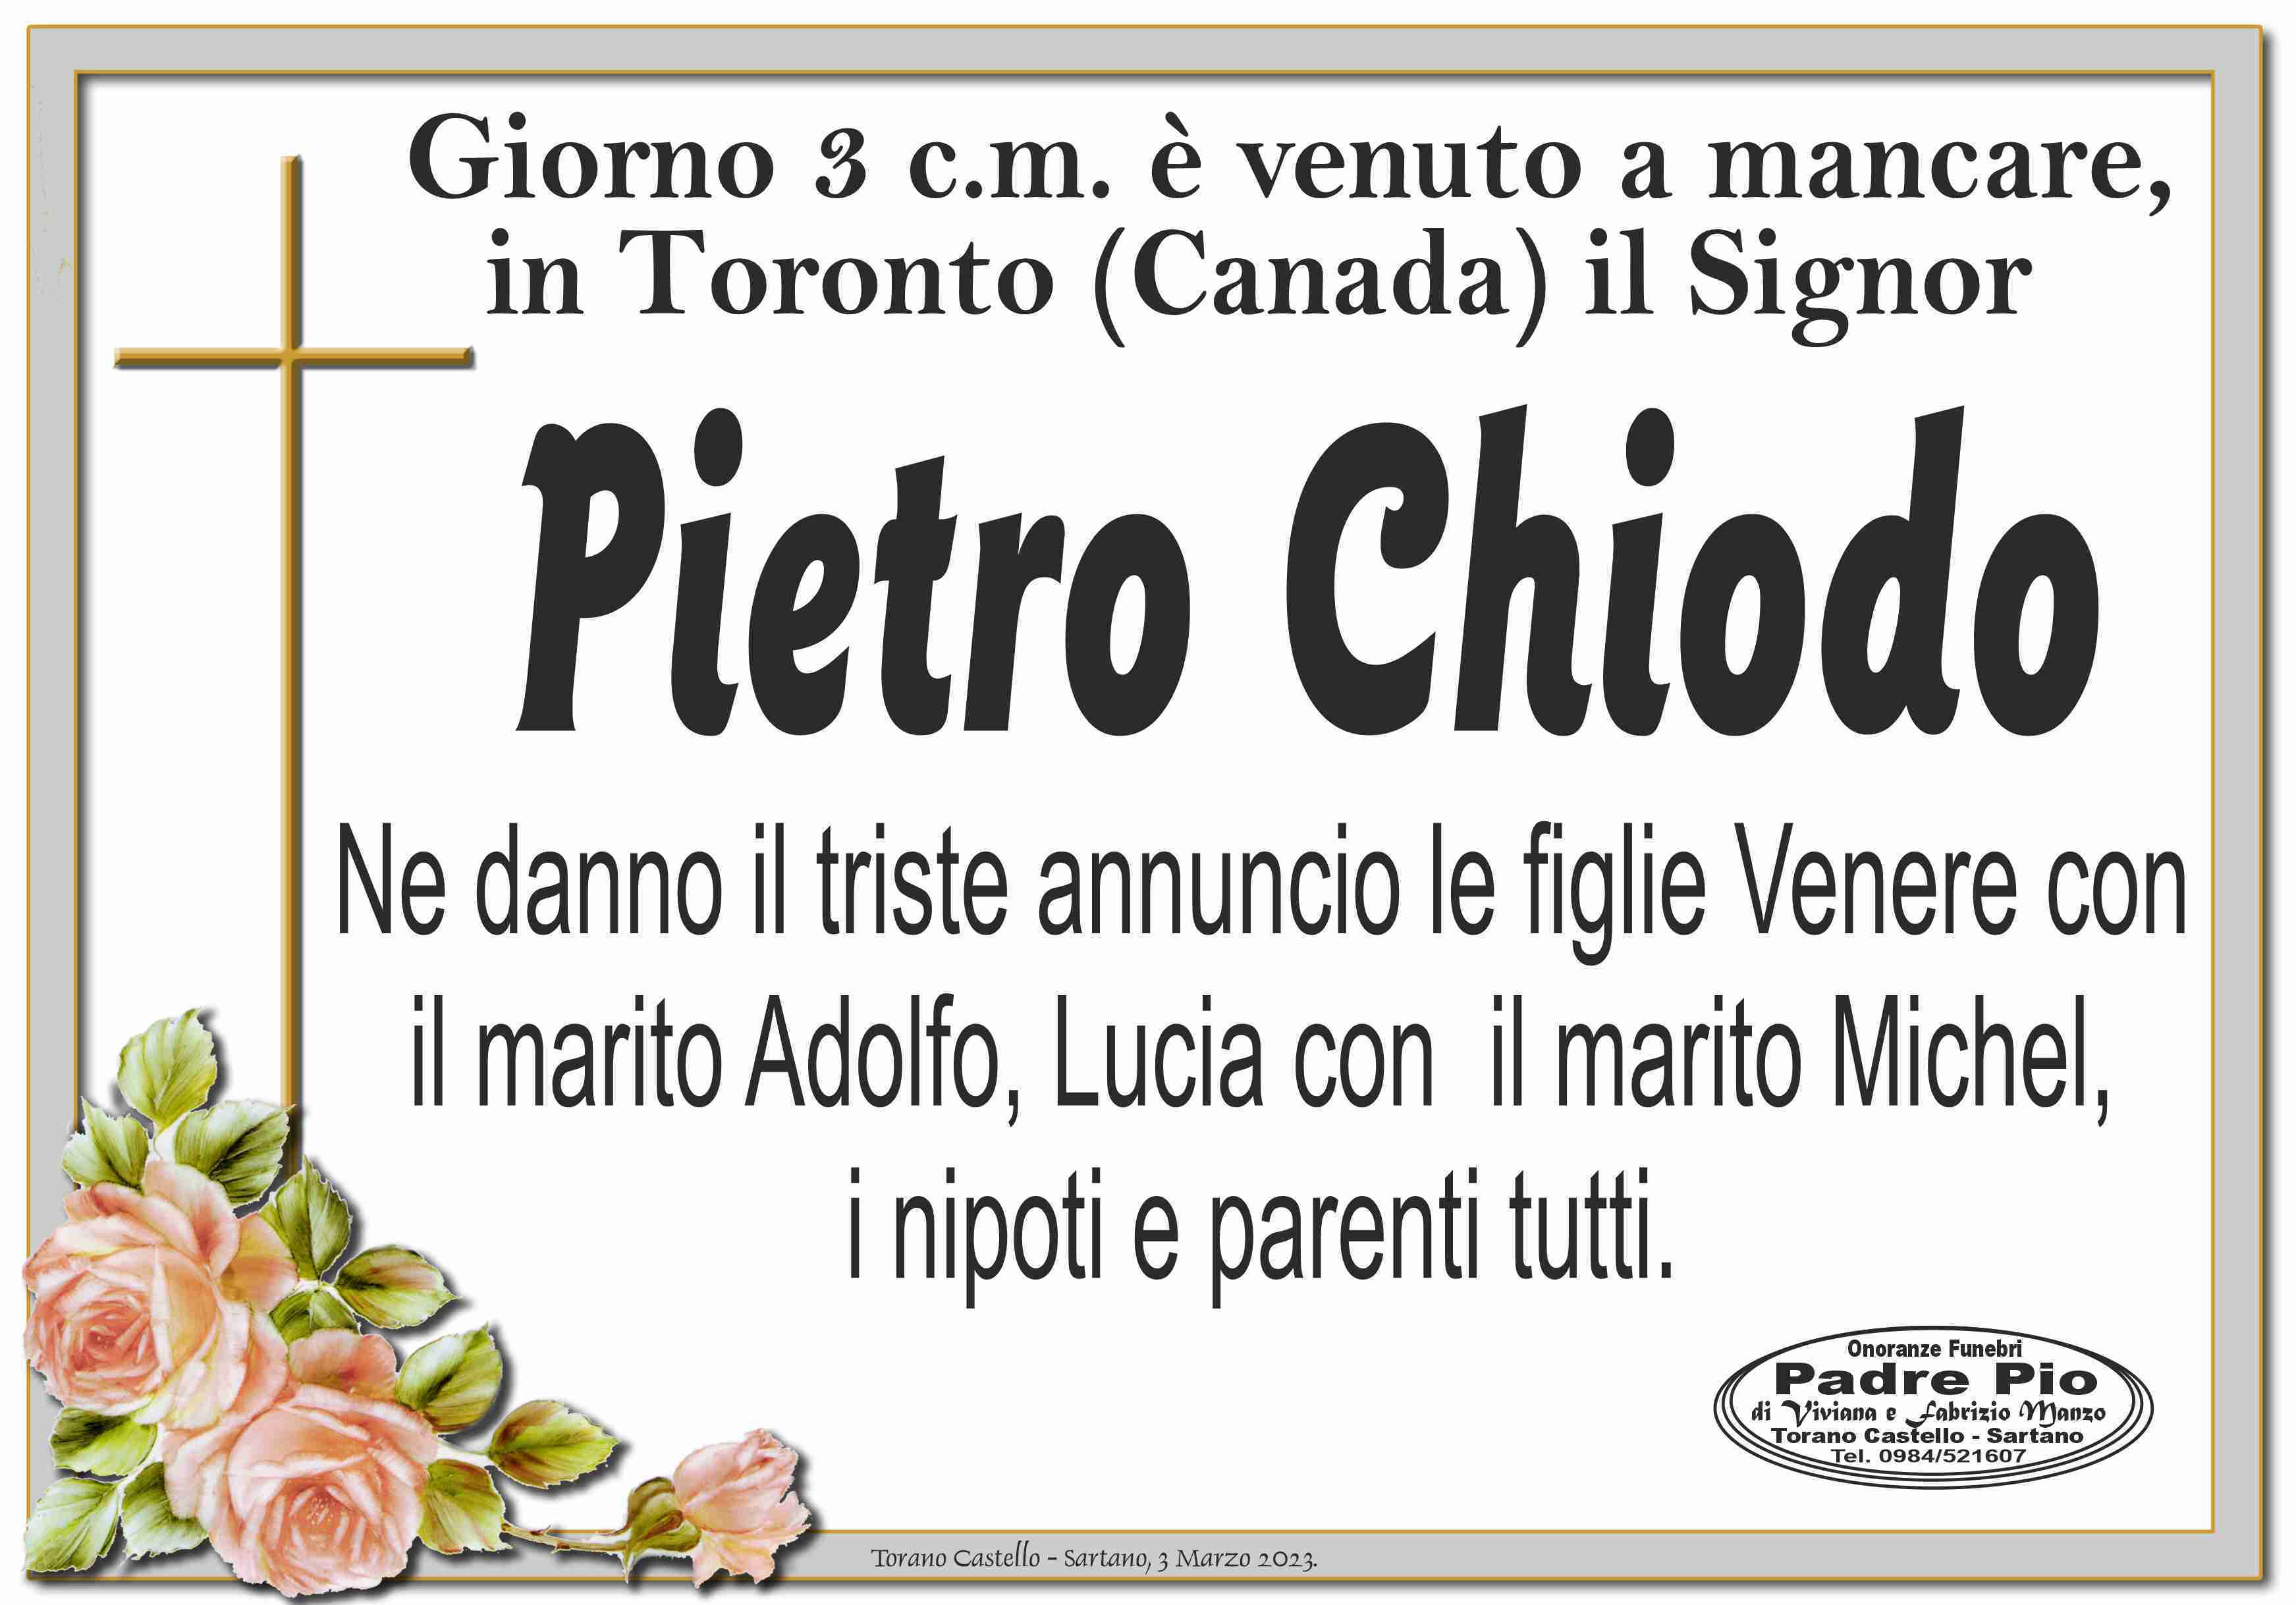 Pietro Chiodo